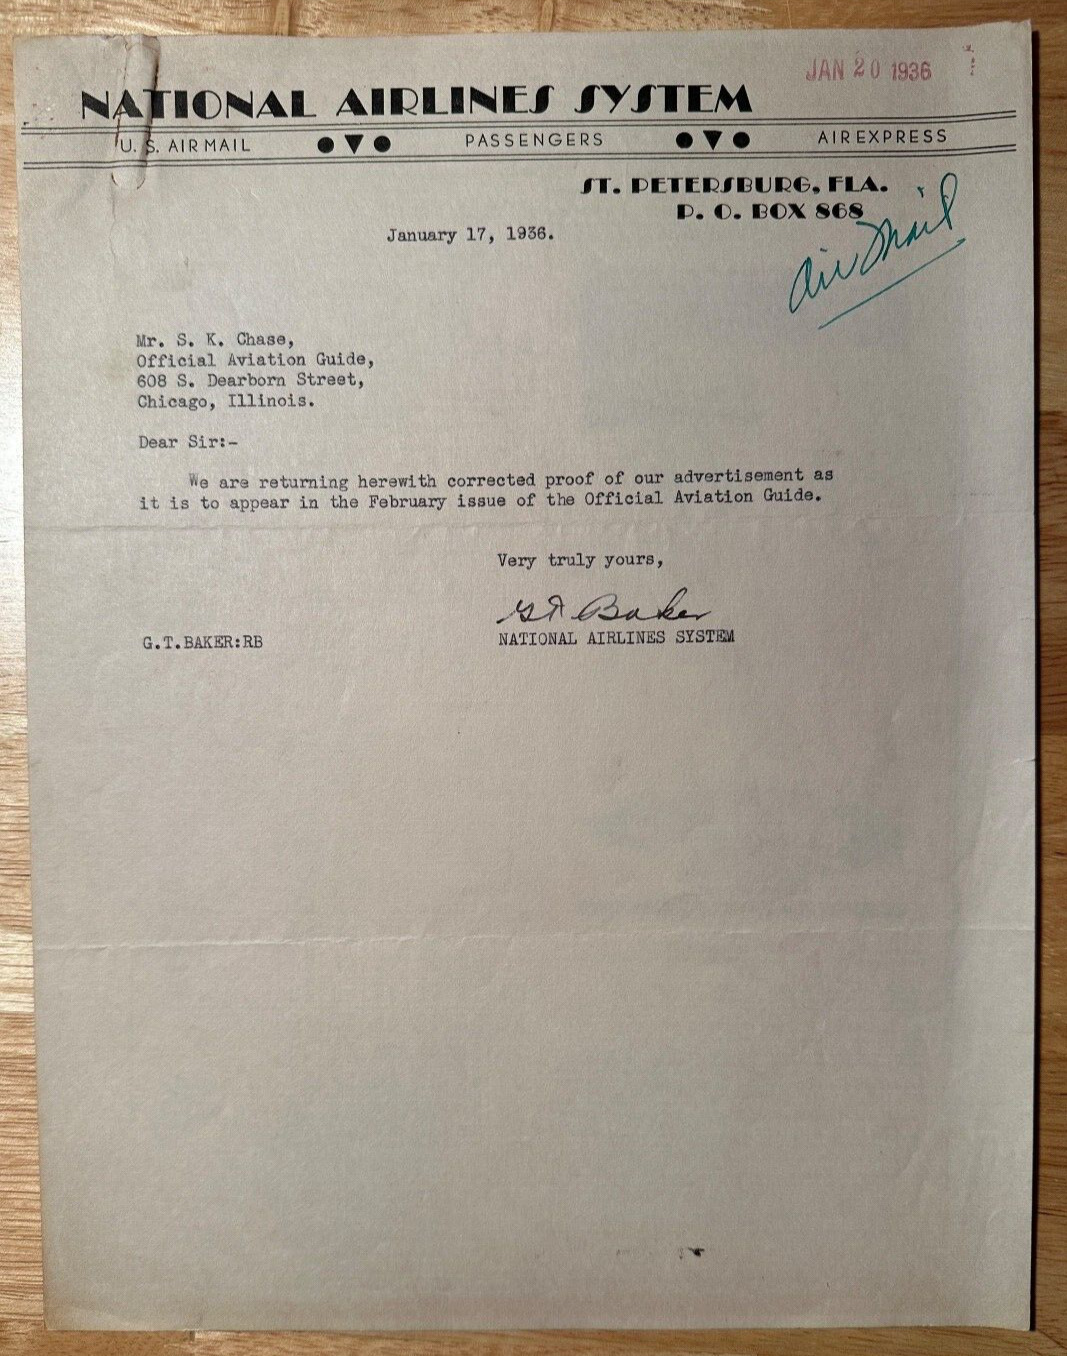 National Airlines System-1936 St. Petersburg, Florida vintage business letter